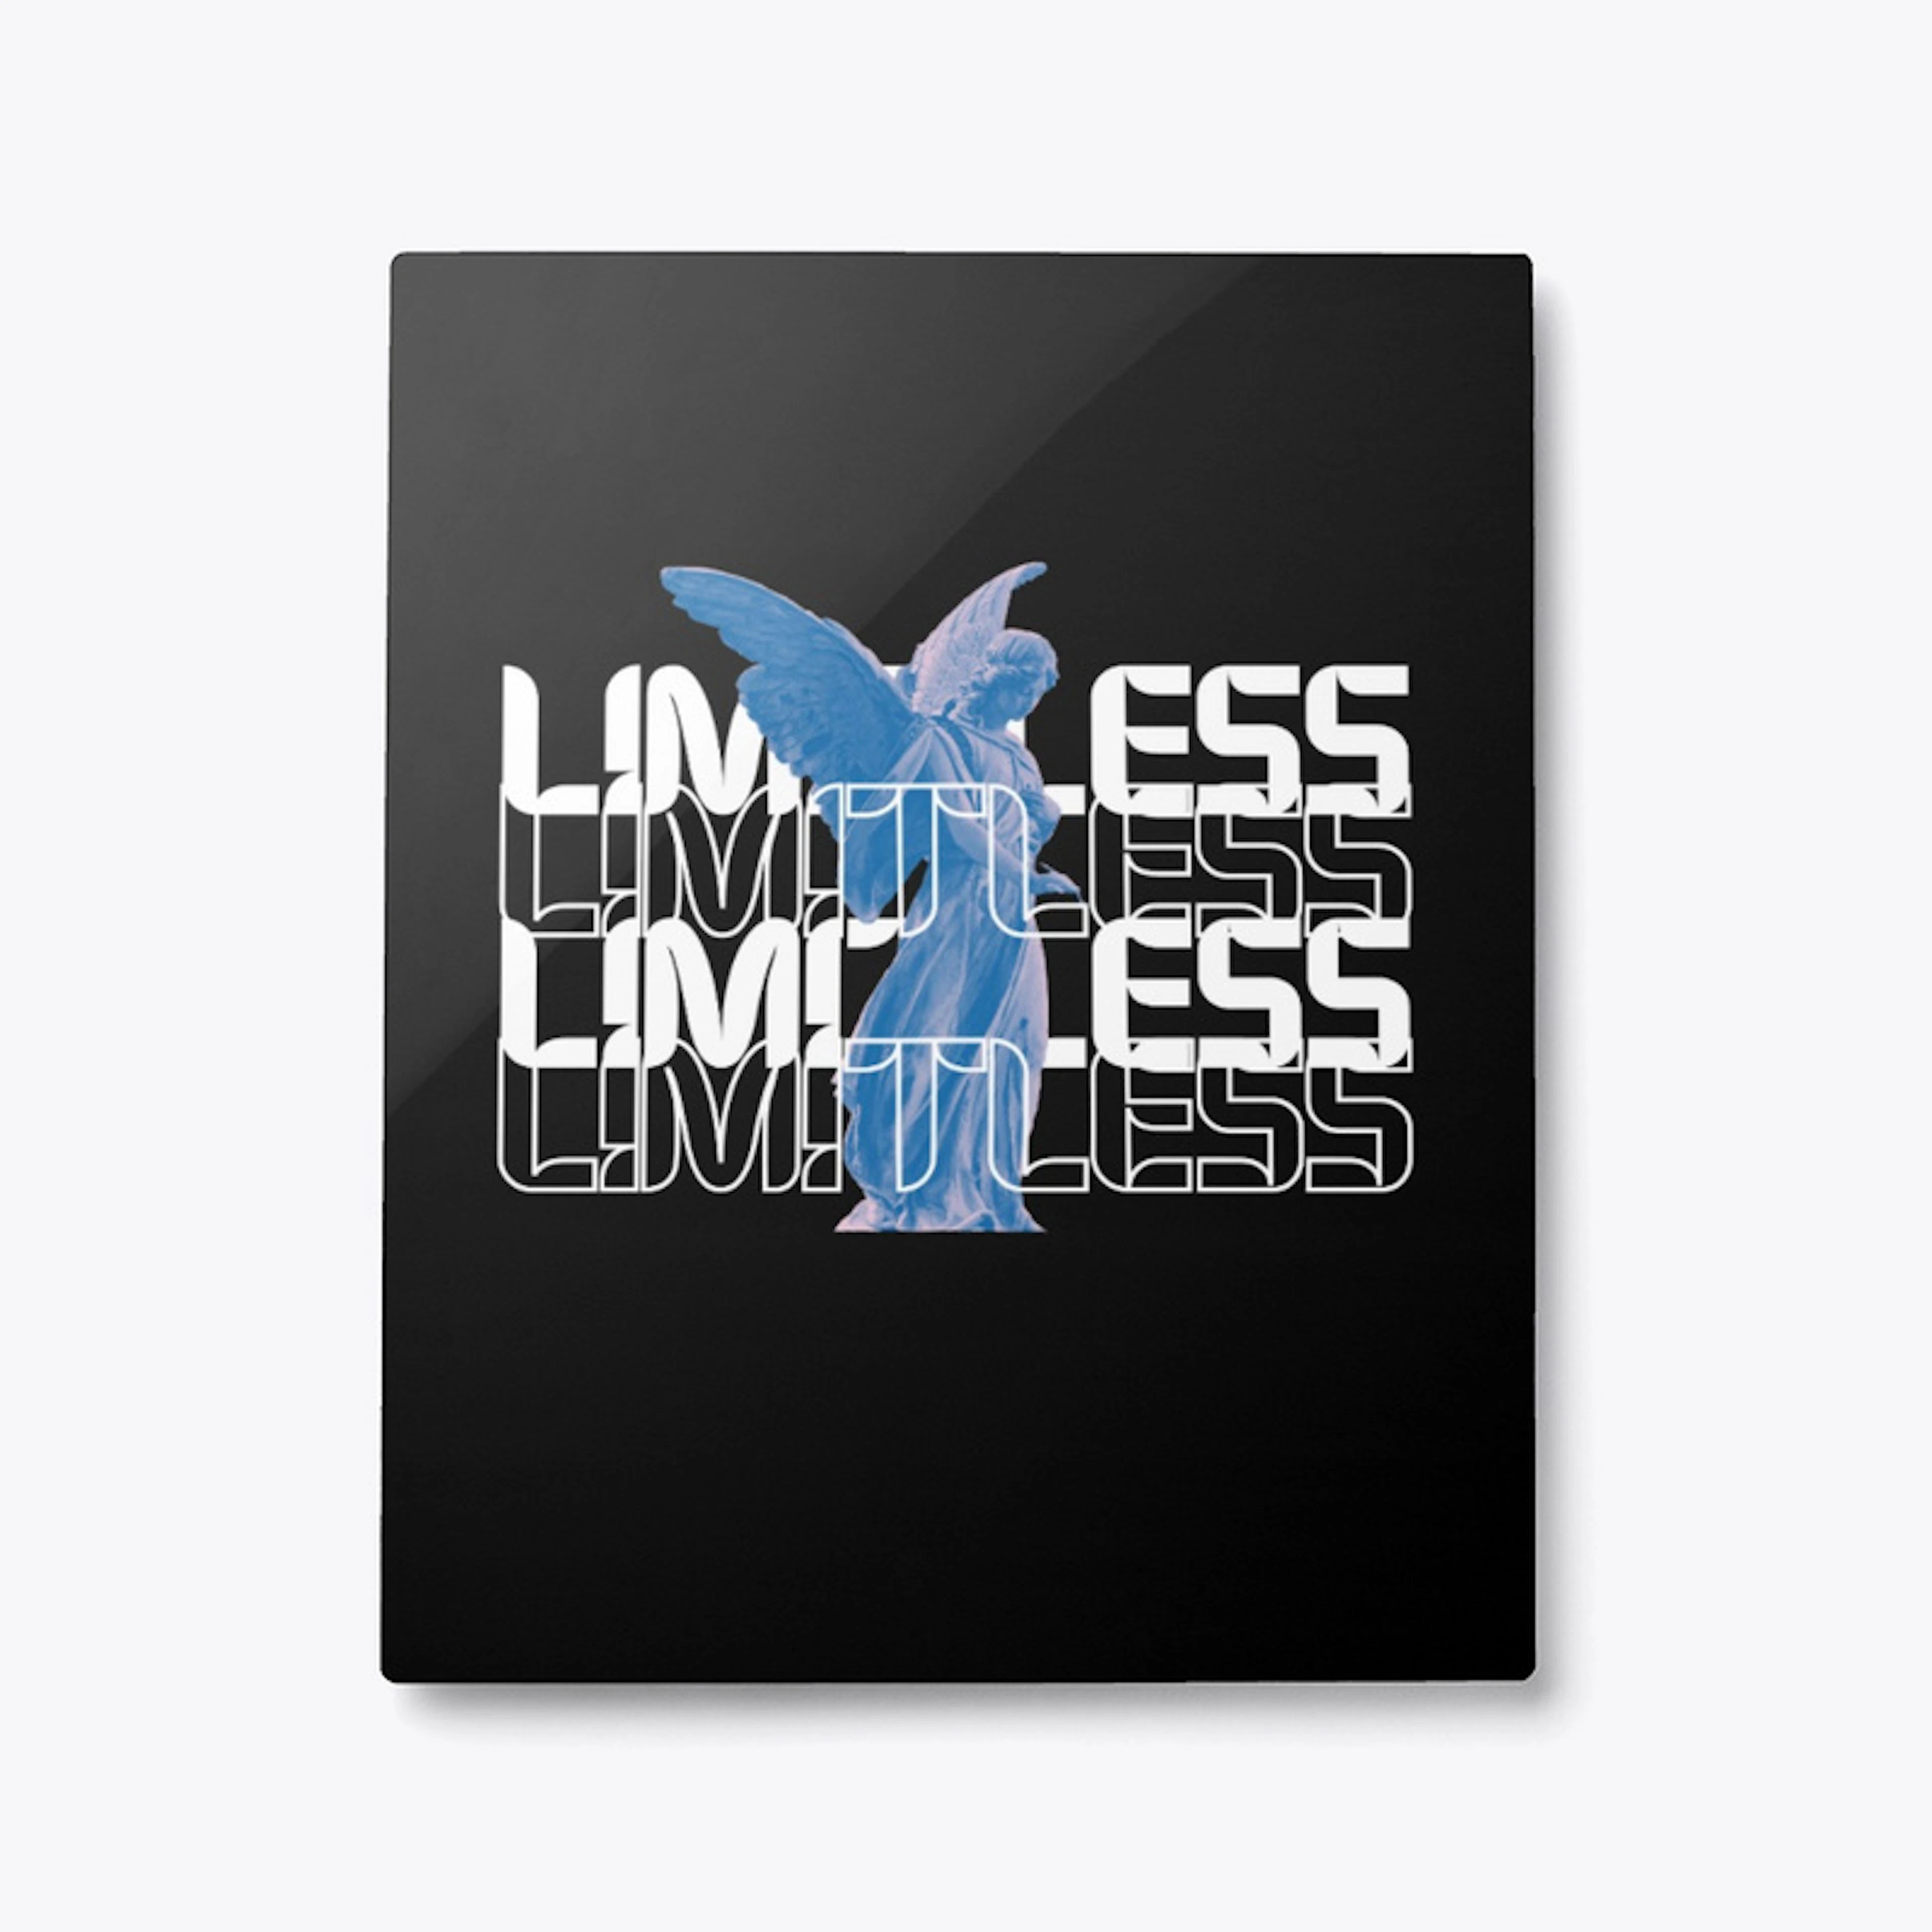 "LIMITLESS"